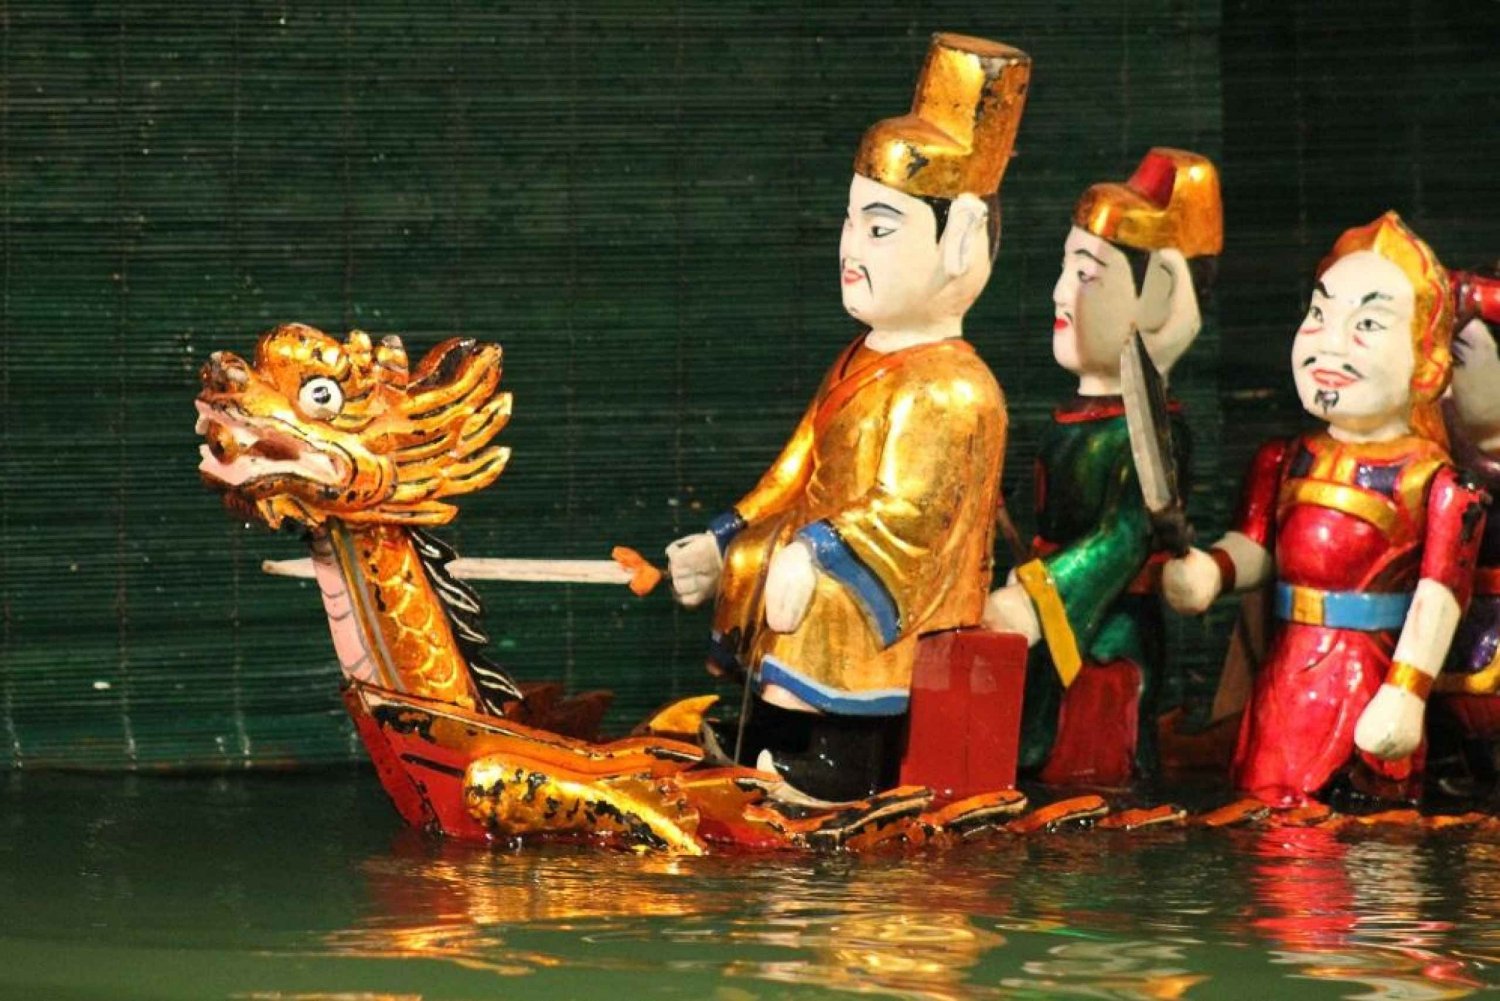 Hanoi: bilety na wodny pokaz kukiełkowy